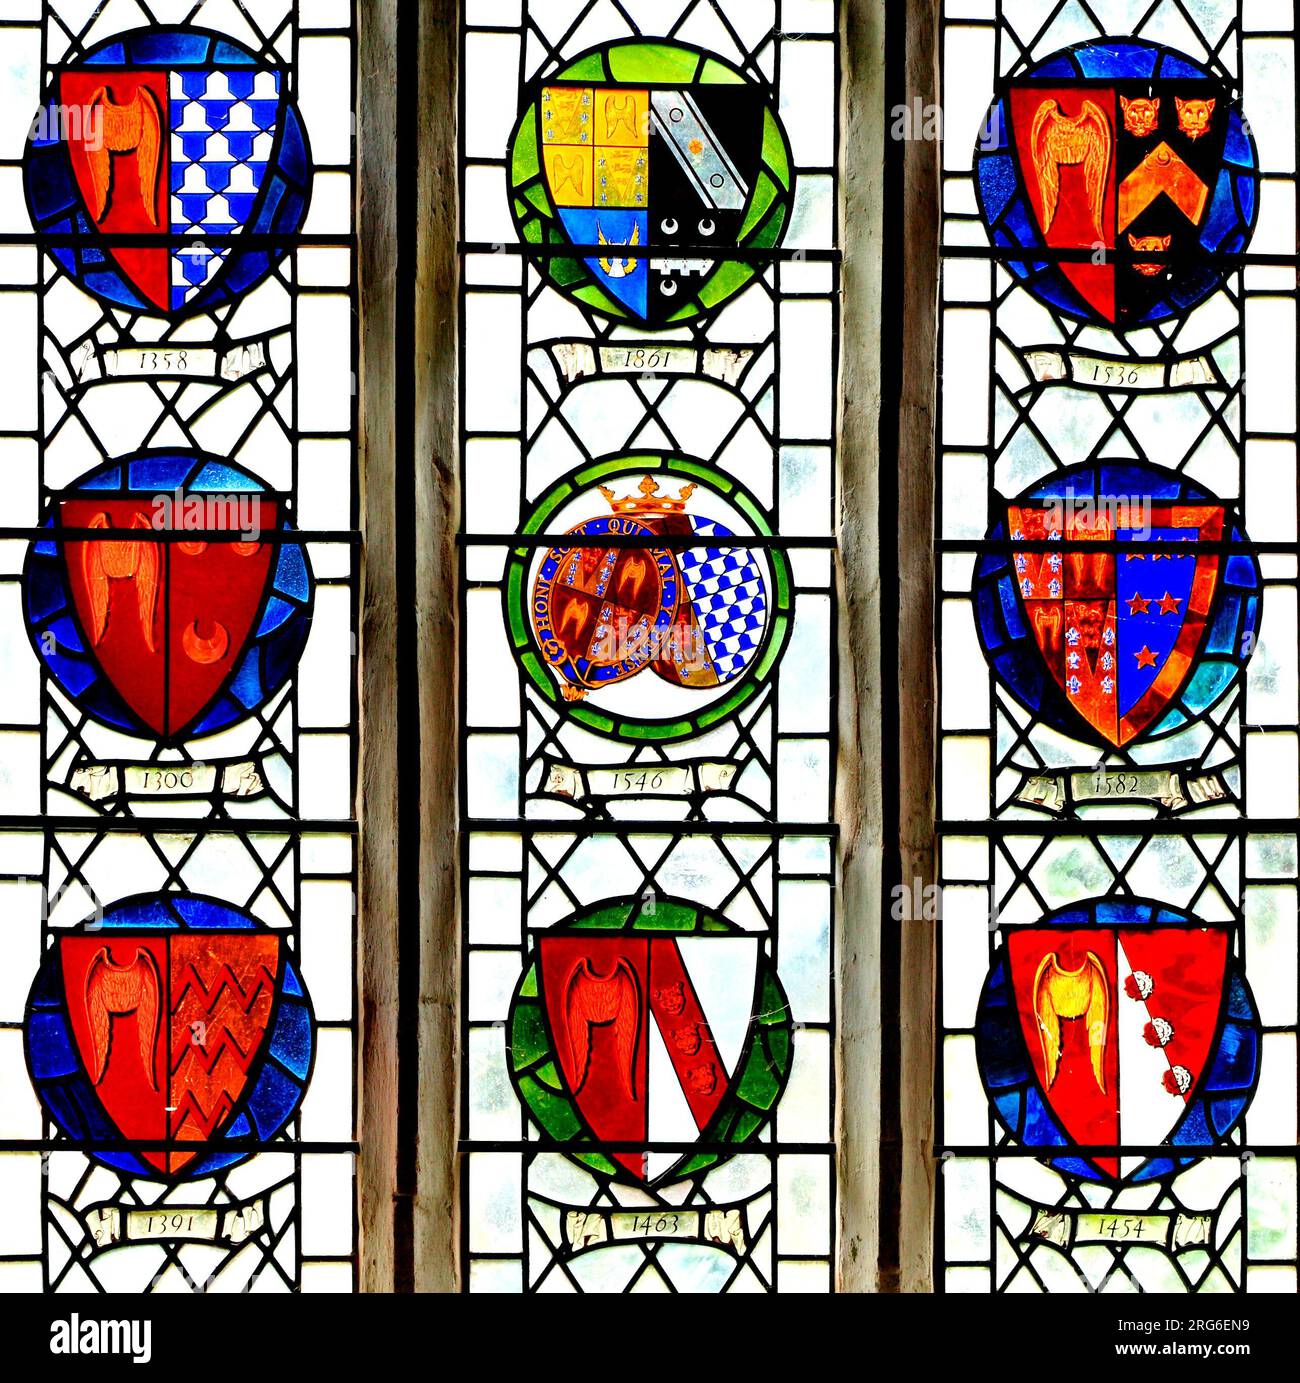 Stanhoe, Norfolk, diverses armoiries de la famille Seymour à travers l'histoire, vitrail, héraldique, bouclier héraldique, dispositif Banque D'Images